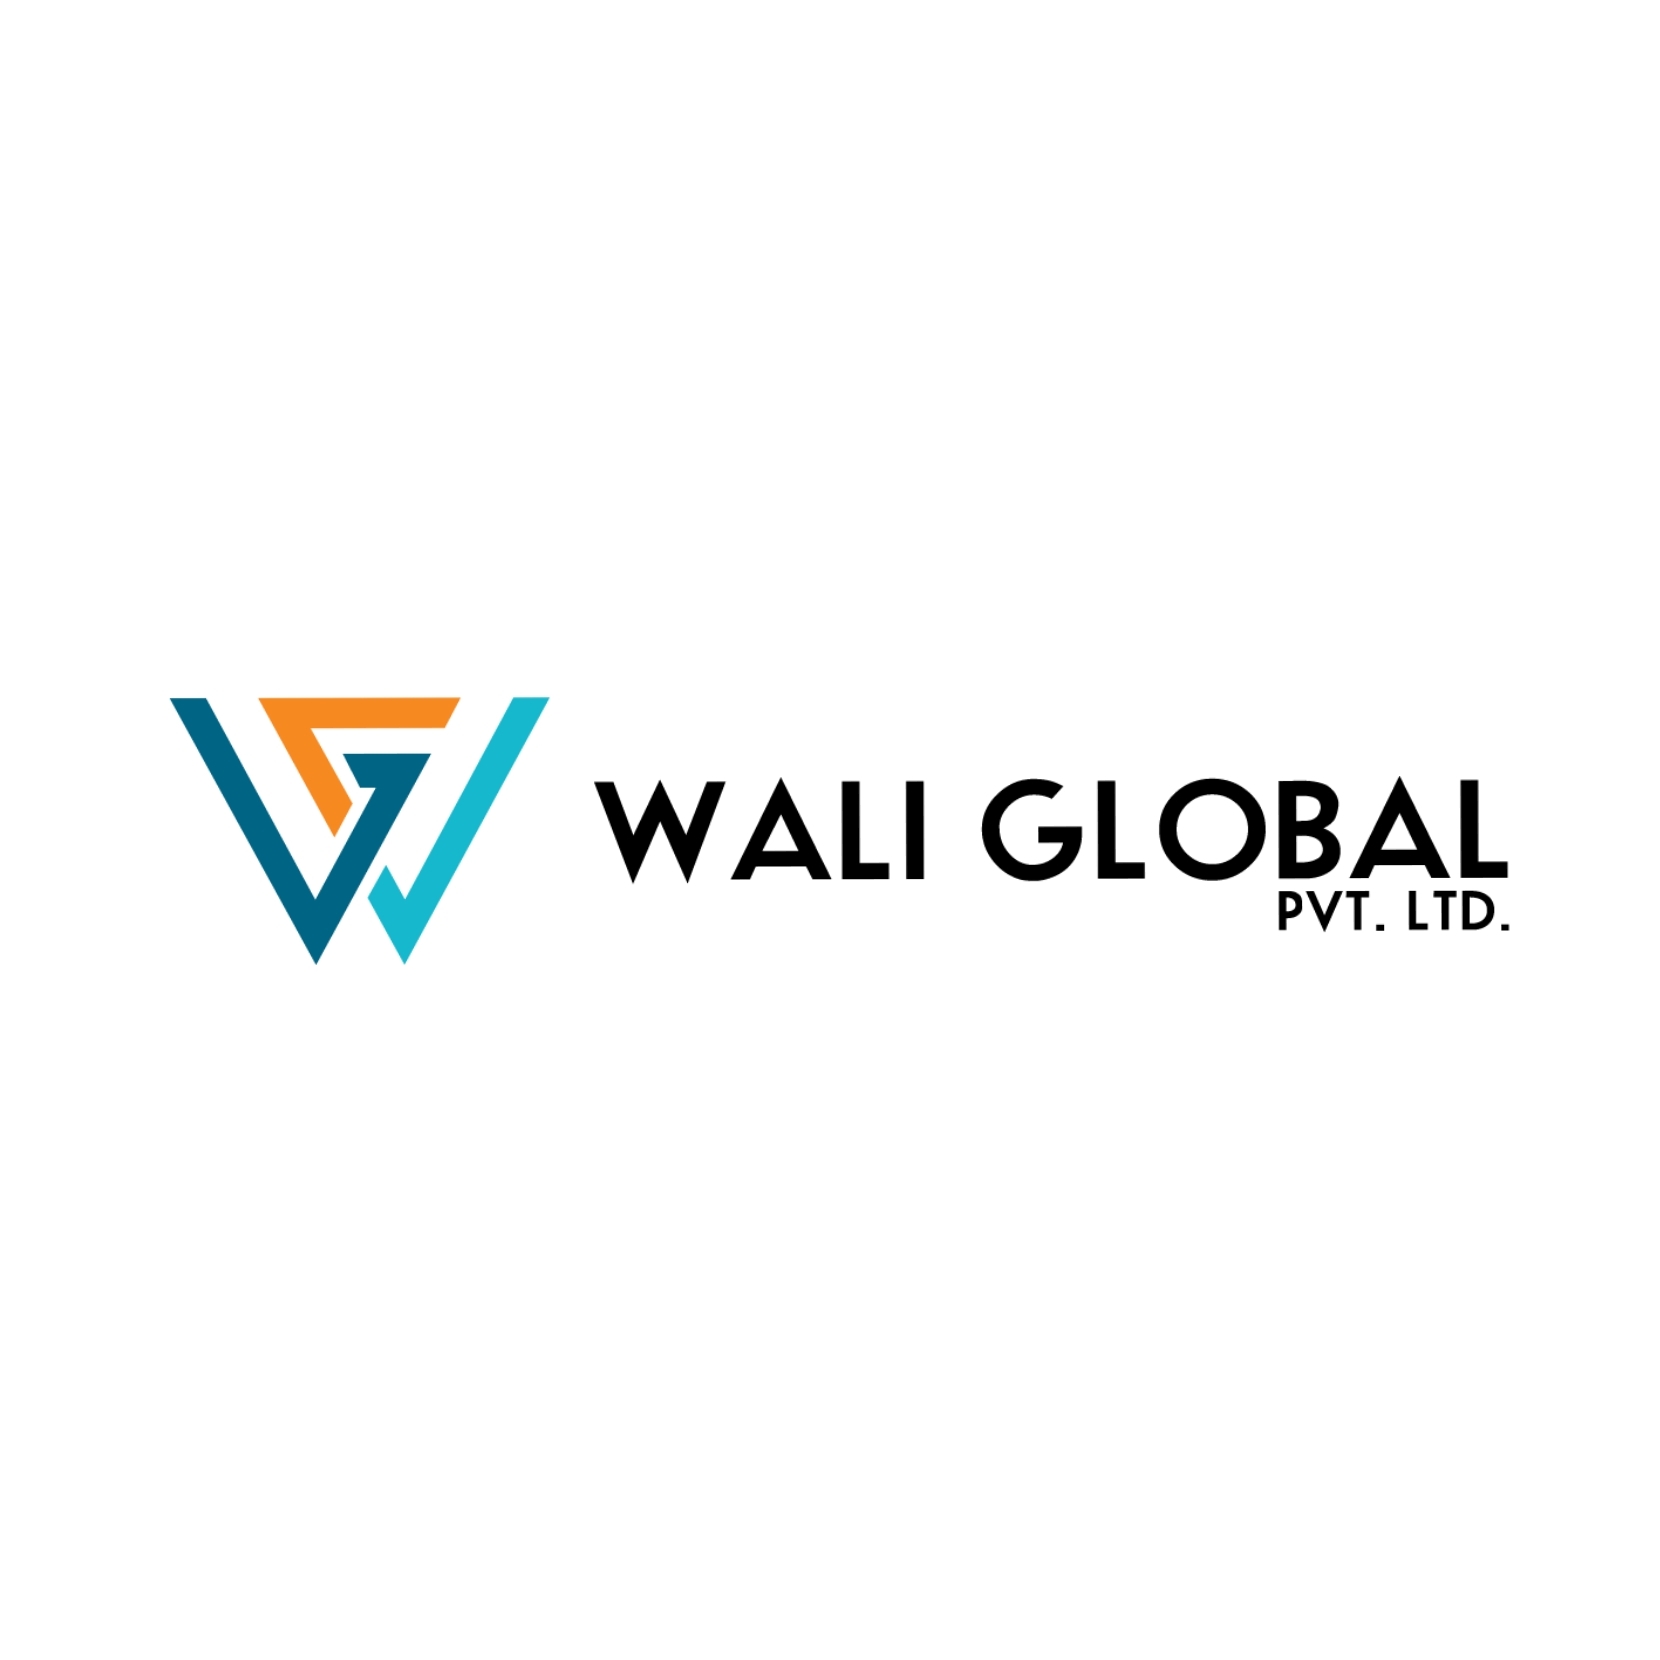 Wali Global